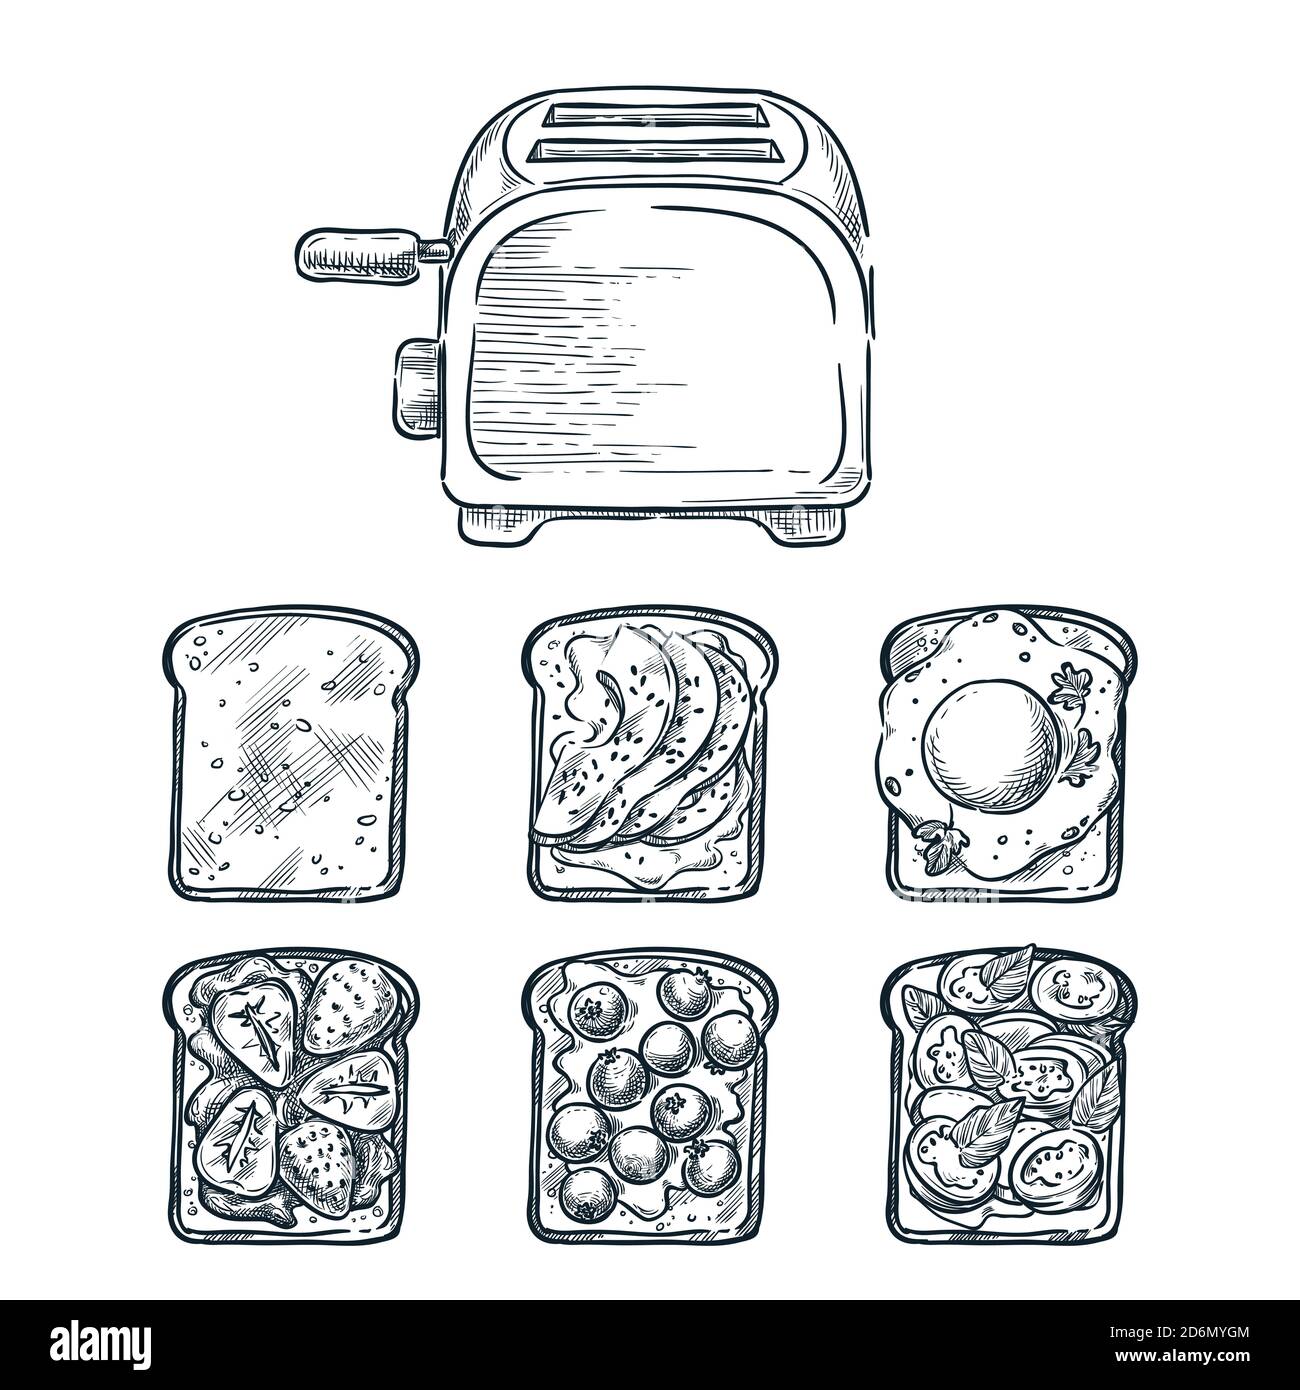 Toaster und verschiedene Toastbrote. Kochen Frühstück, Vektor-Skizze Illustration. Rezepte und Zutaten für leckere Toastauflagen. Res Stock Vektor